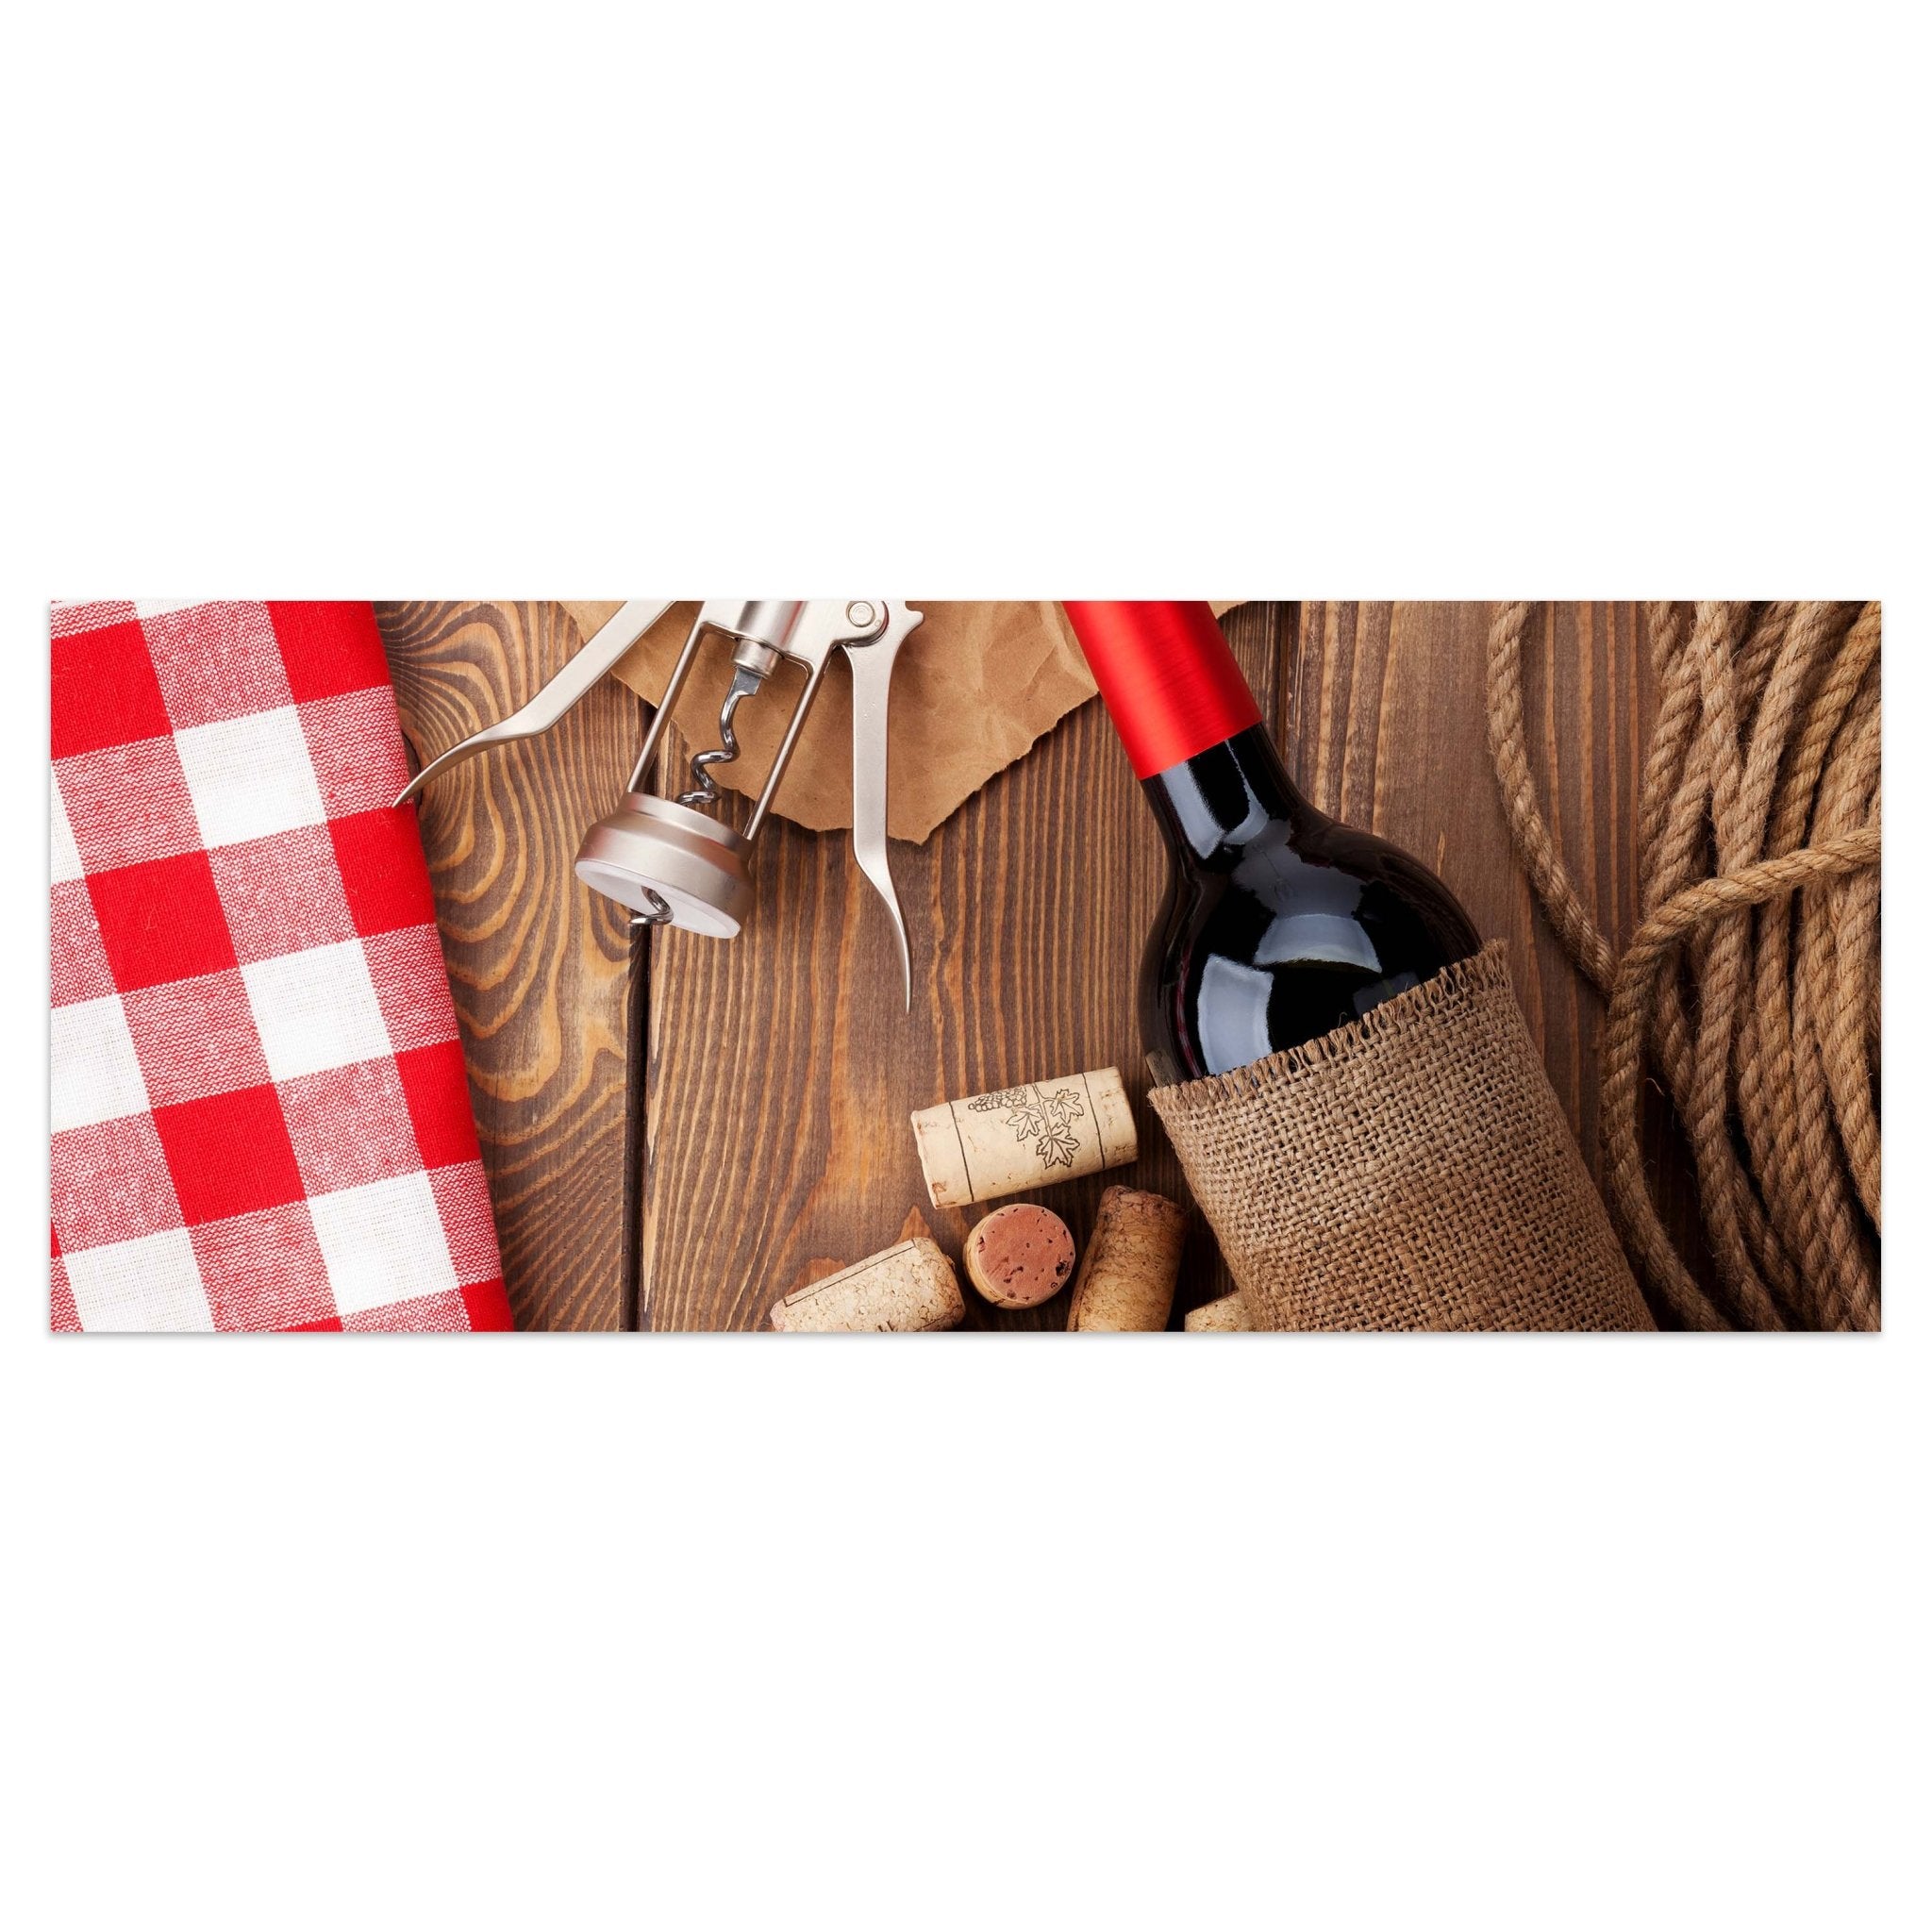 Leinwandbild Rotweinflasche, Schüssel mit Korken und Korkenzieher M0832 kaufen - Bild 1